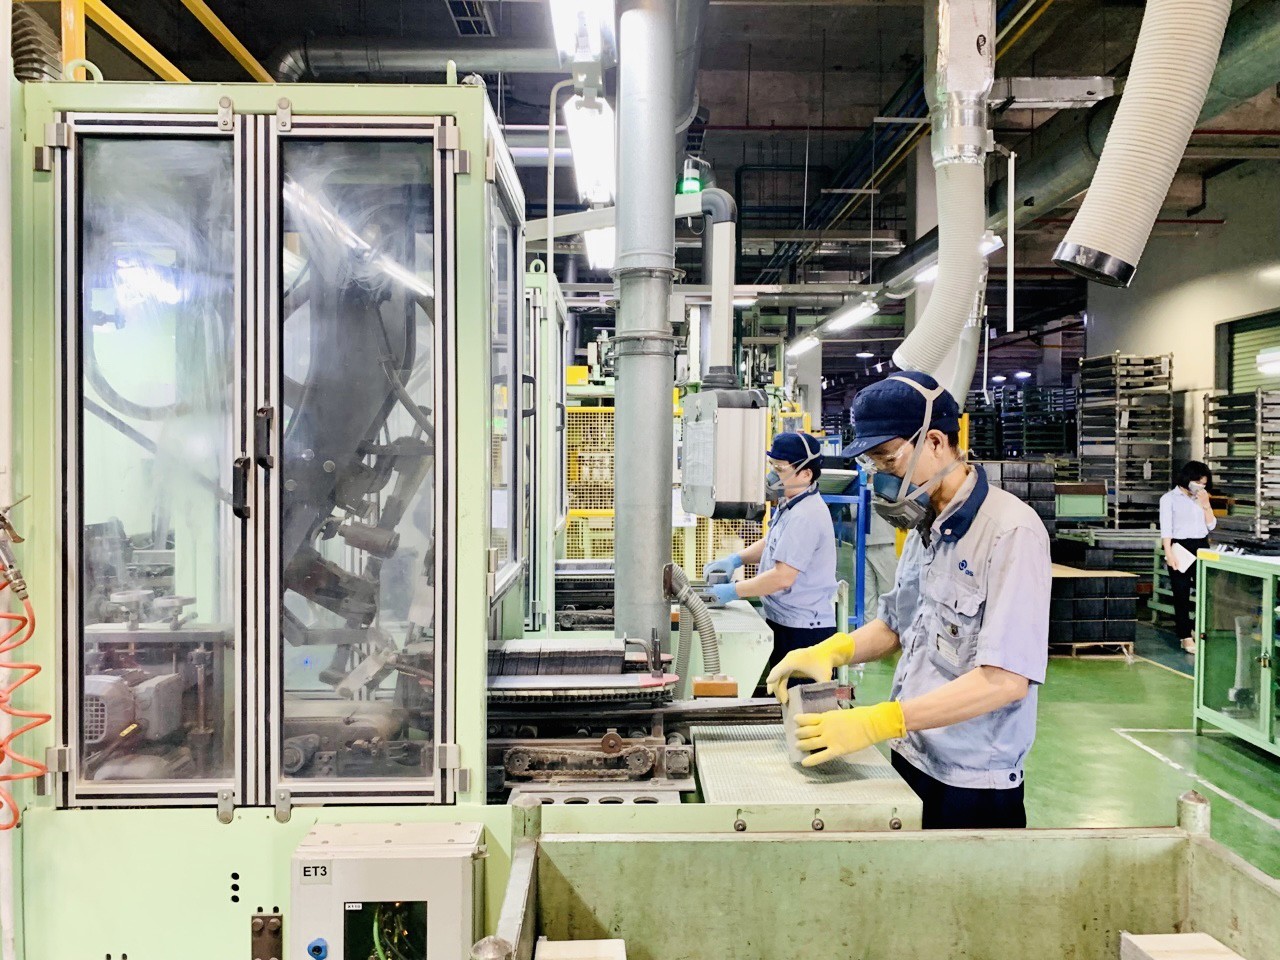 
Sản xuất tại Công ty TNHH Ắc quy GS Việt Nam, Khu công nghiệp VSIP 1 (Bình Dương).&nbsp;
